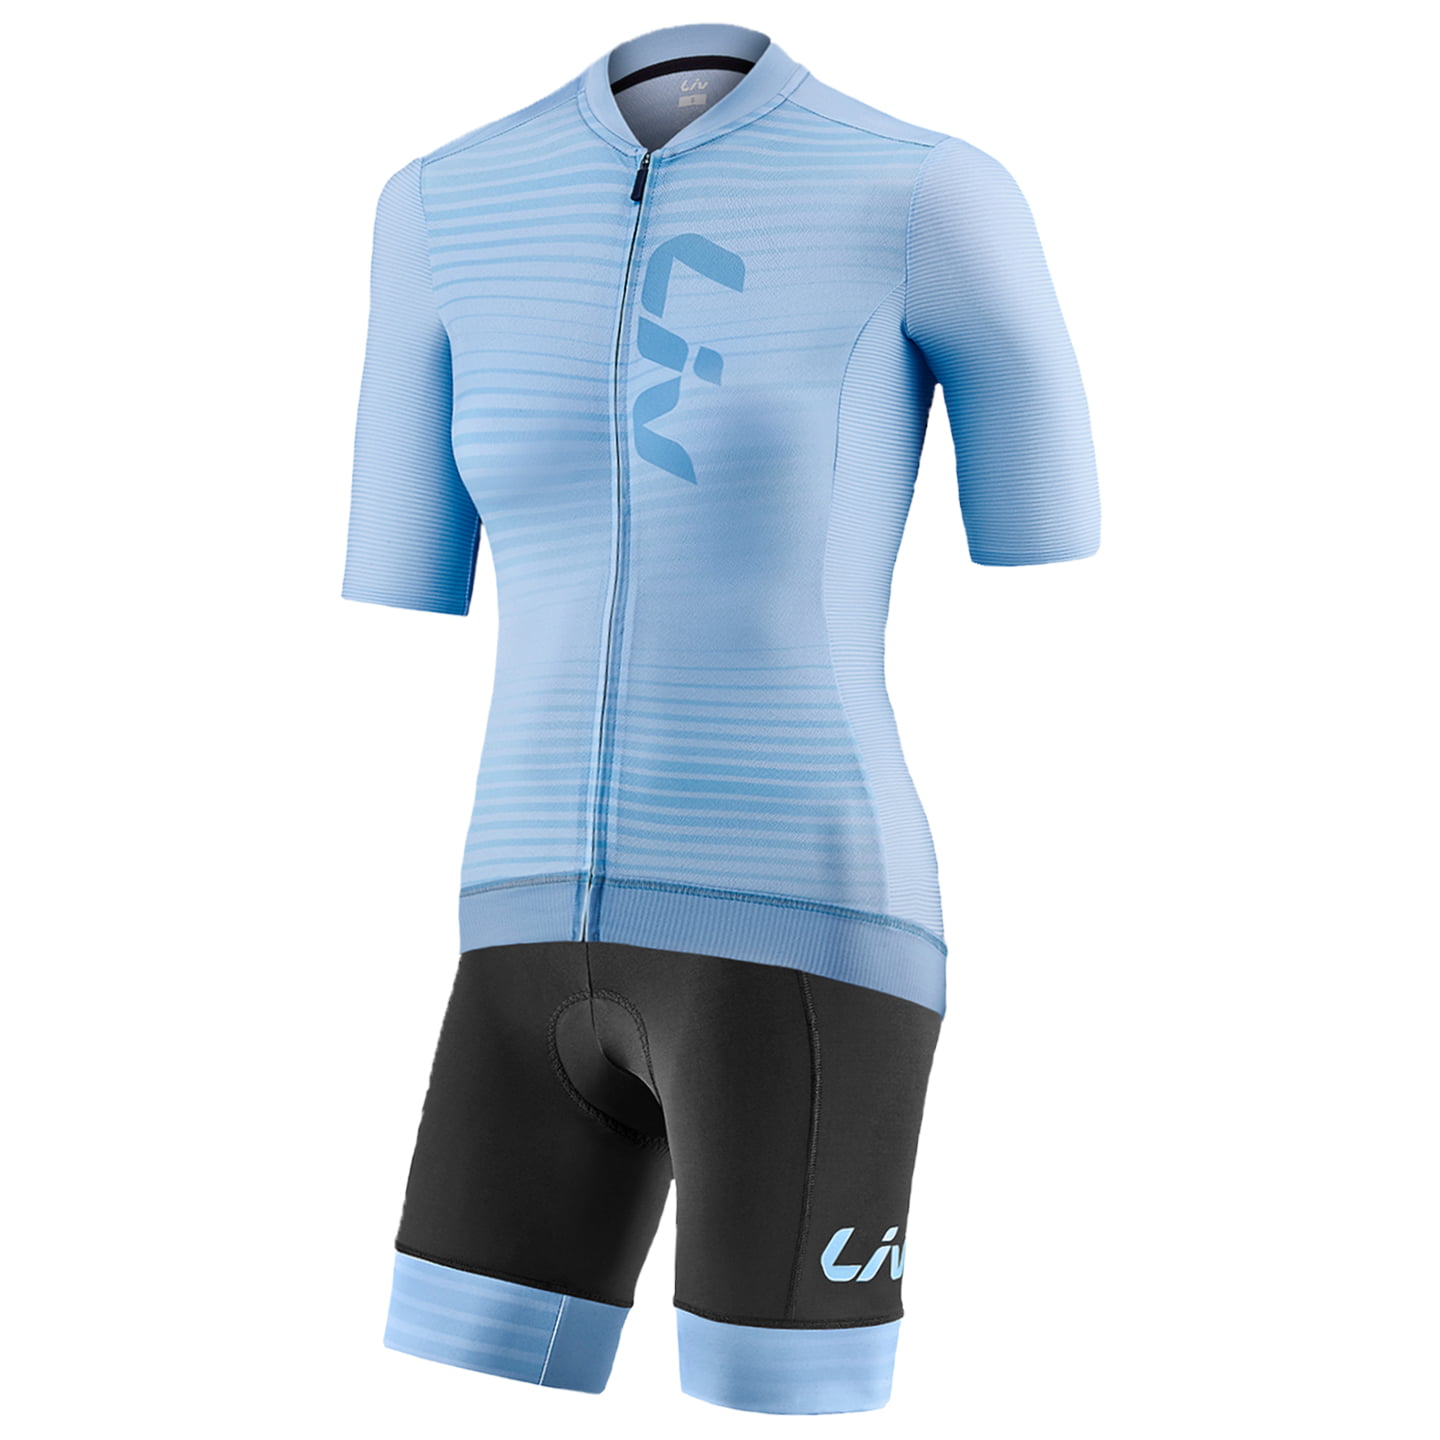 LIV Facile Women’s Set (cycling jersey + cycling shorts) Women’s Set (2 pieces), Cycling clothing